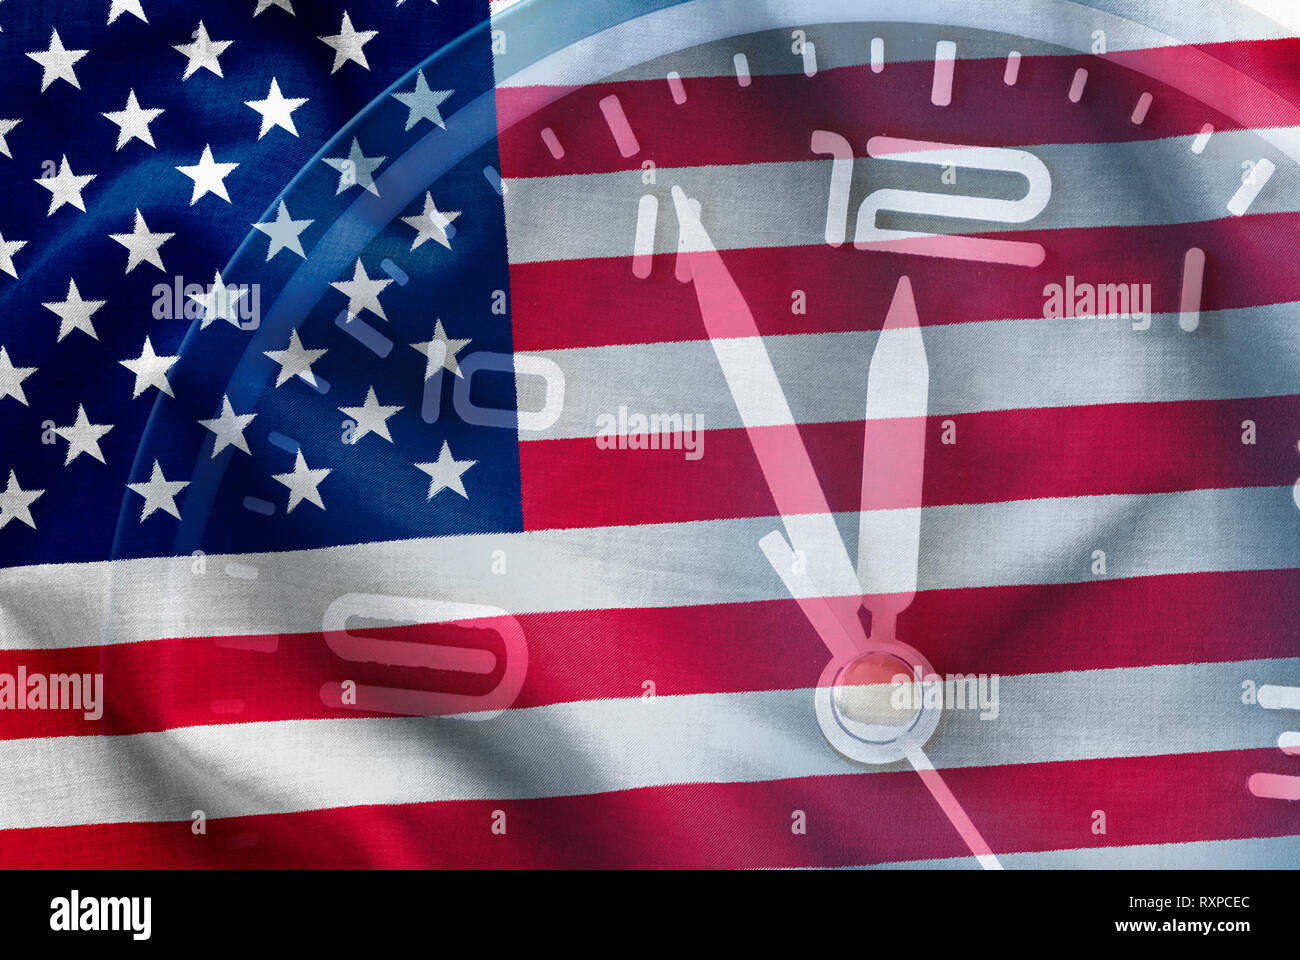 Des composites le drapeau américain, Stars and Stripes, ancienne gloire, avec un cadran d'horloge montrant l'heure cinq à douze dans une image conceptuelle Banque D'Images